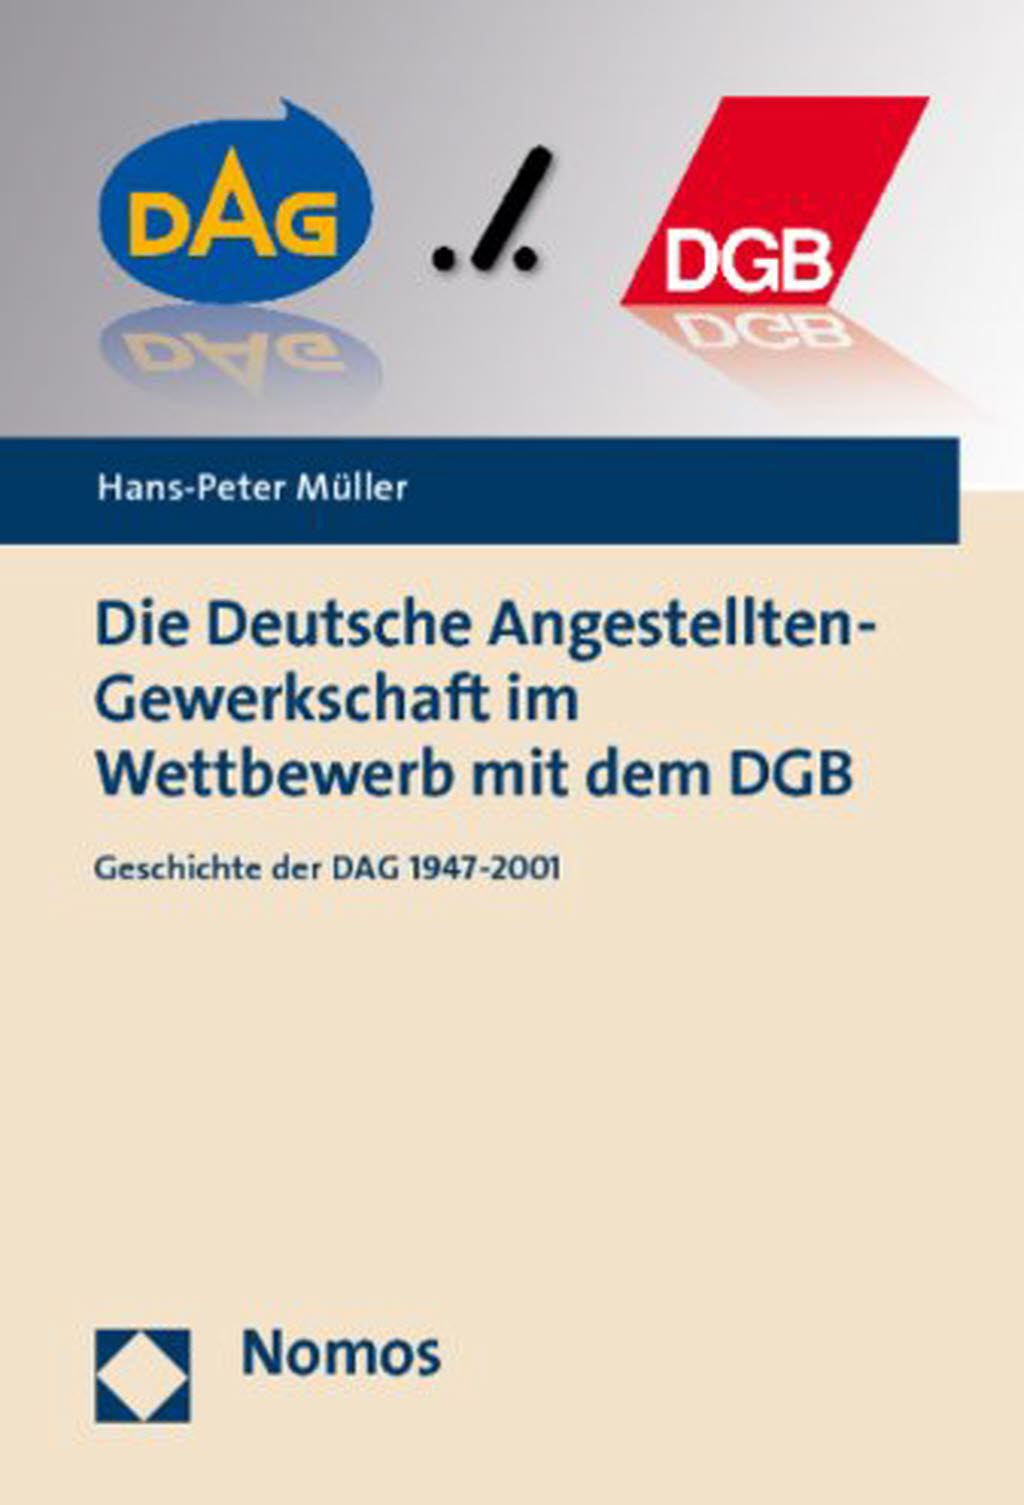 Die Deutsche Angestellten-Gewerkschaft im Wettbewerb mit dem DGB